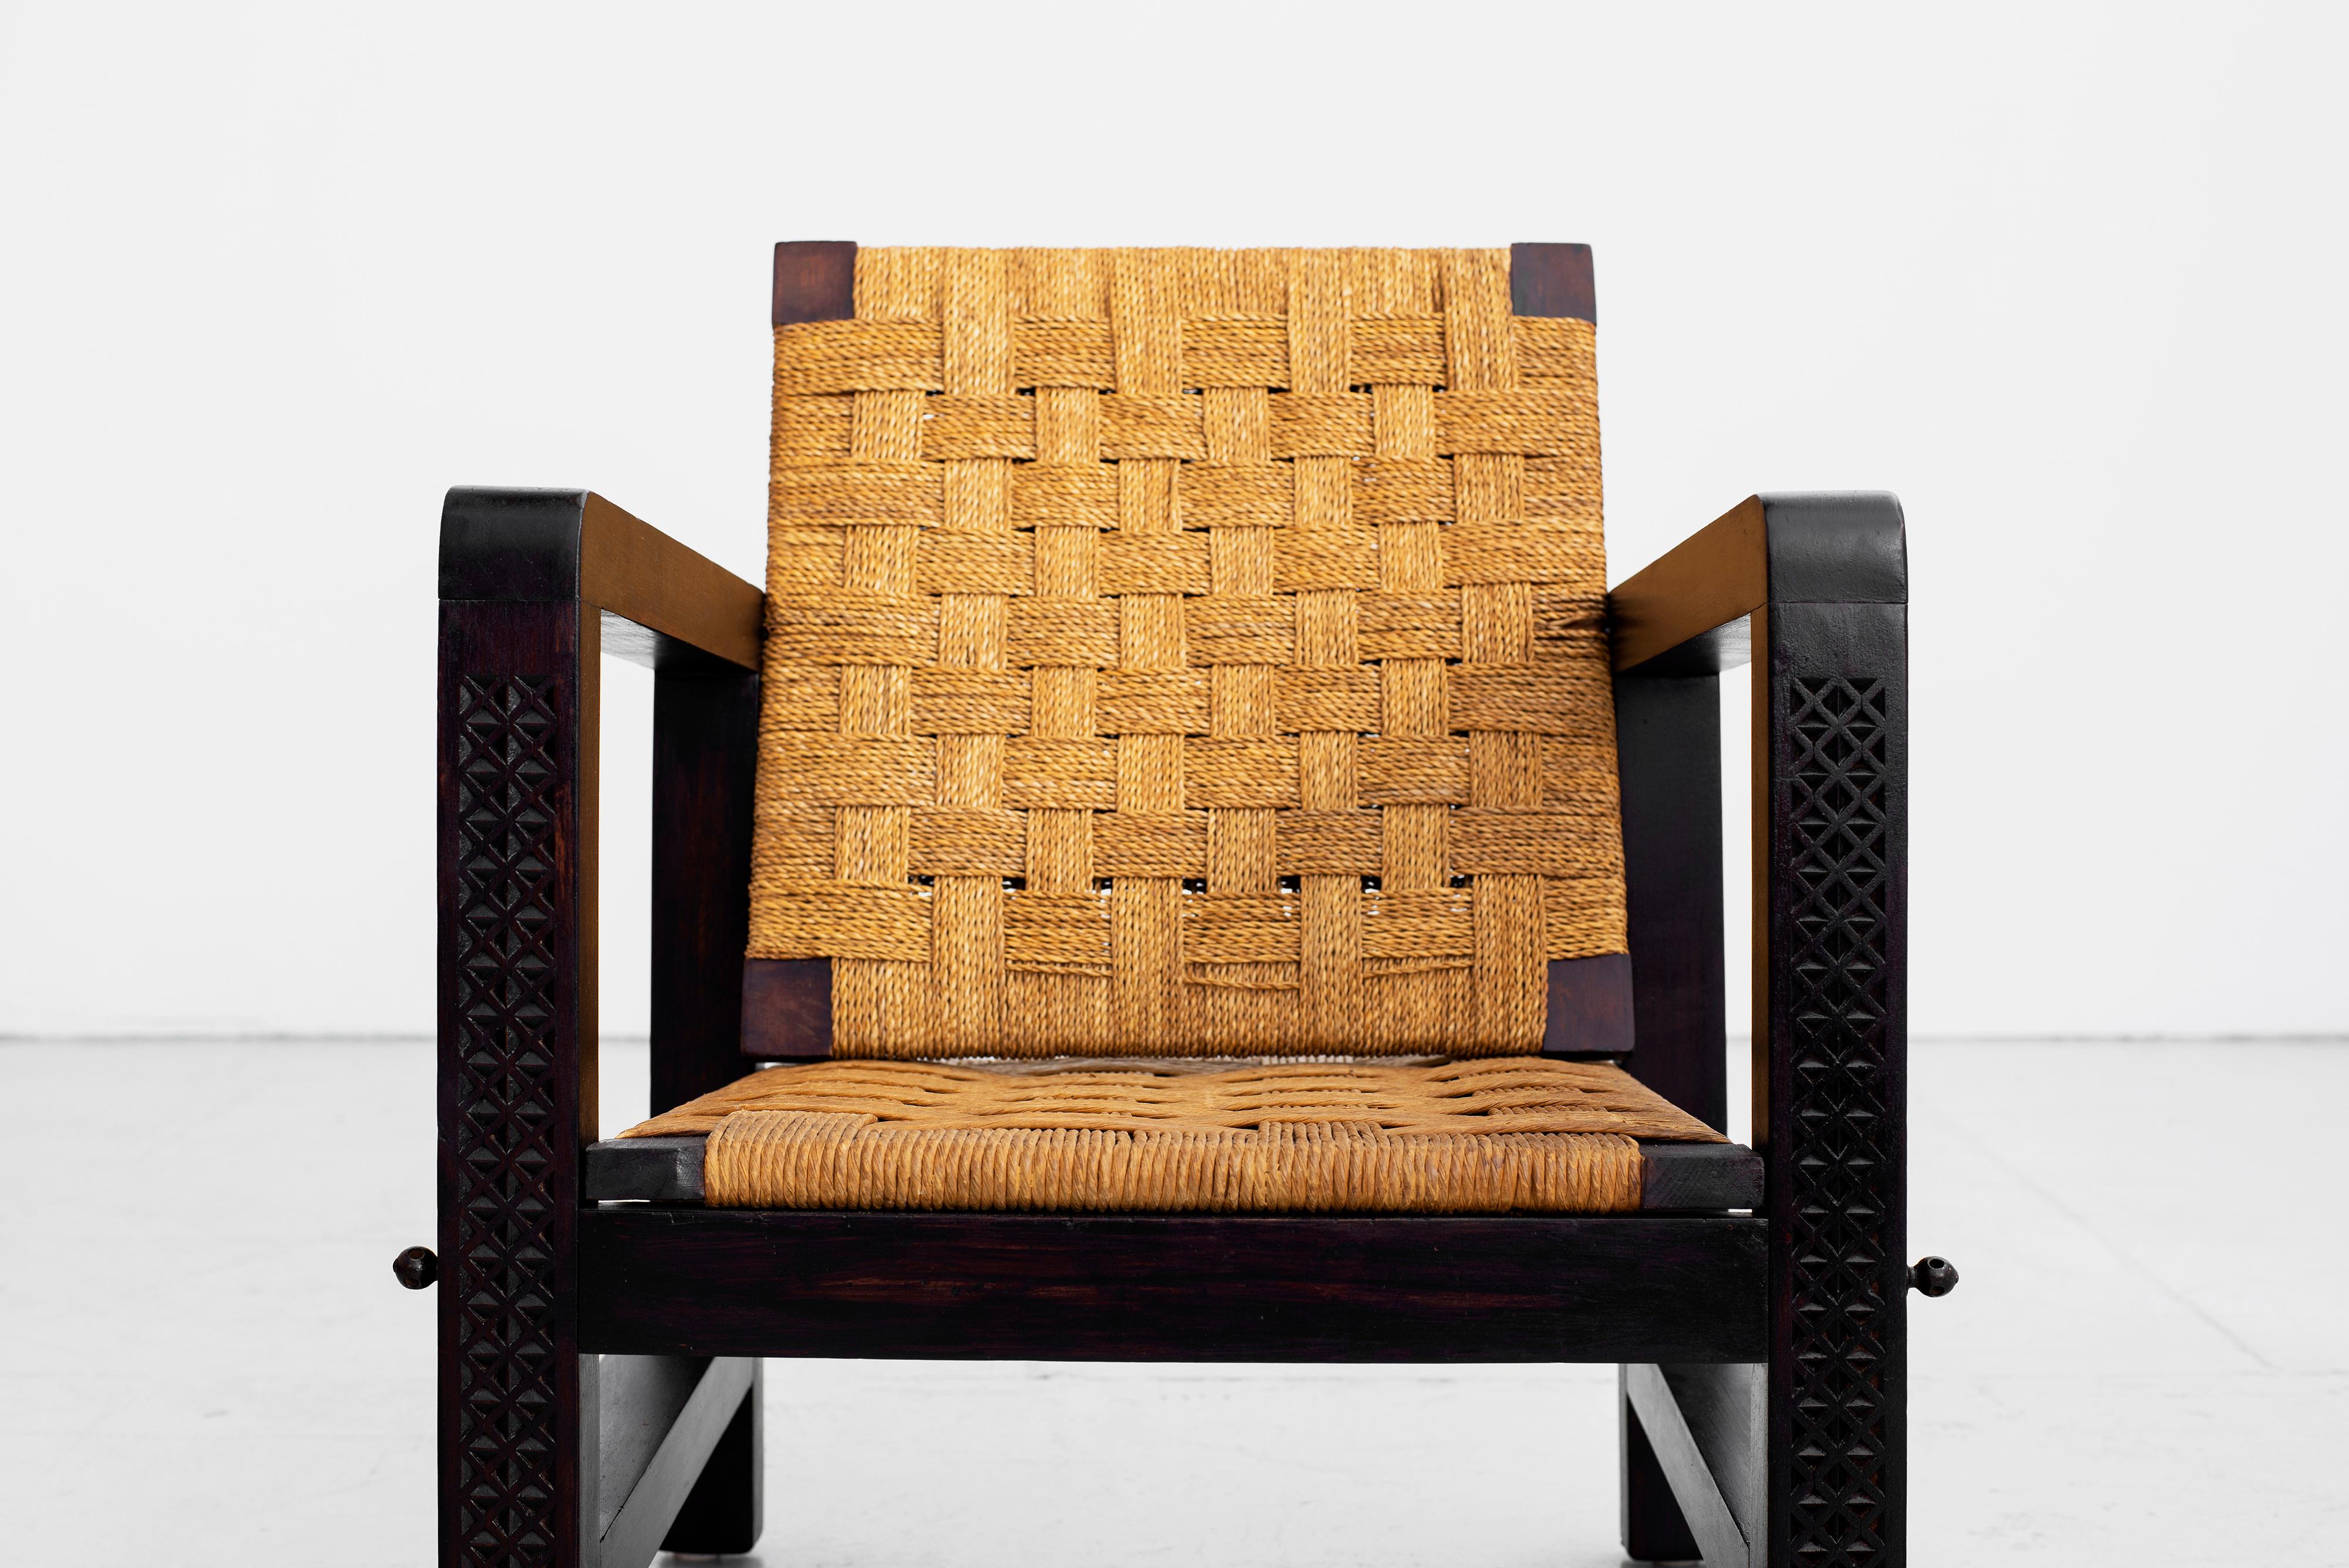 Oak Francis Jourdain Chairs